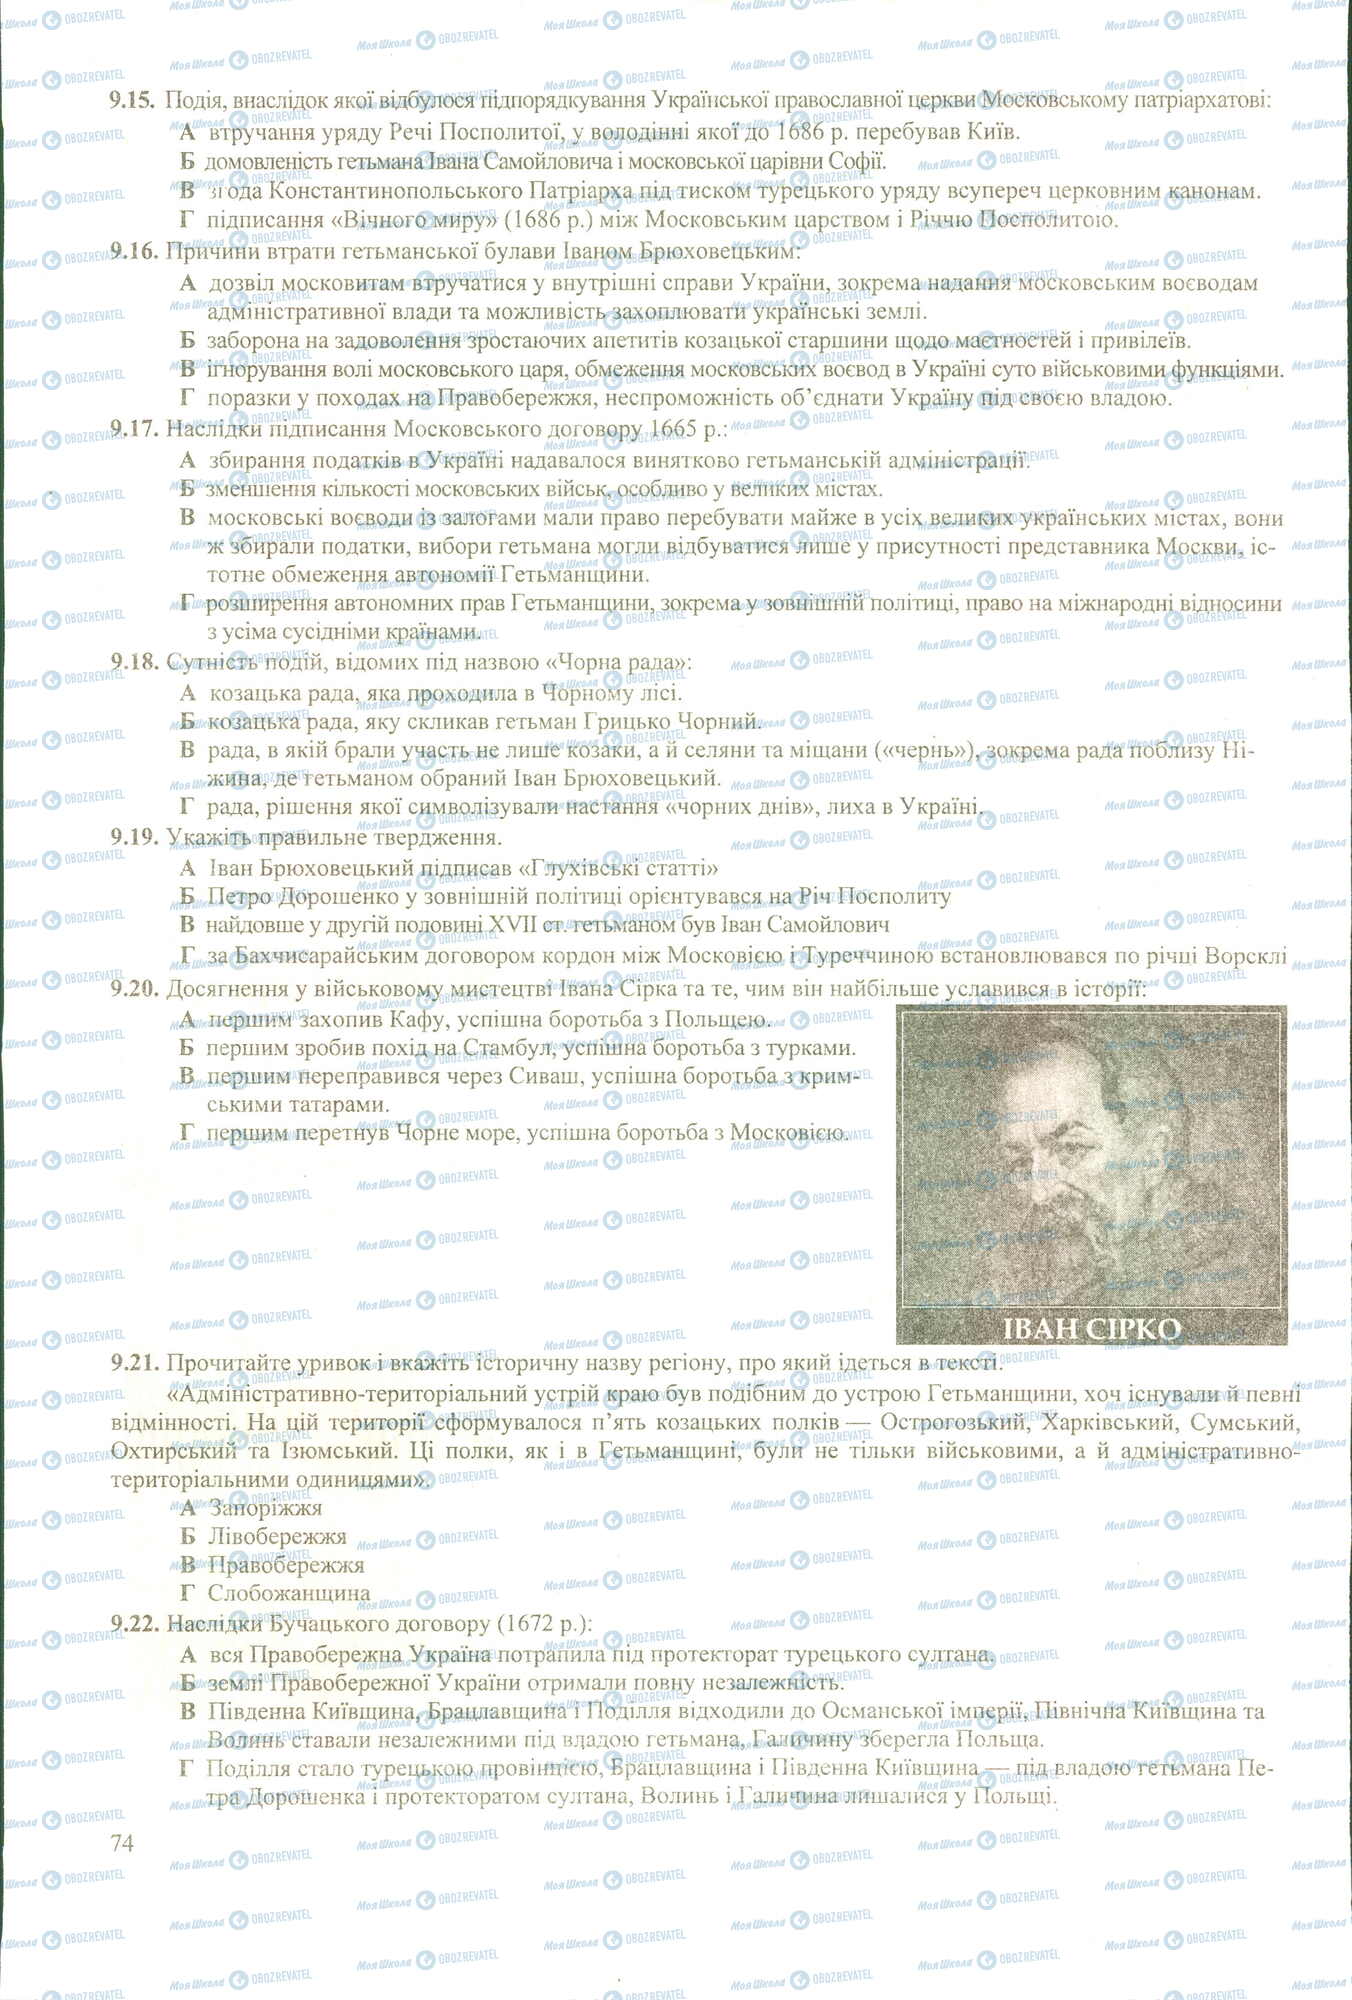 ЗНО История Украины 11 класс страница 15-22